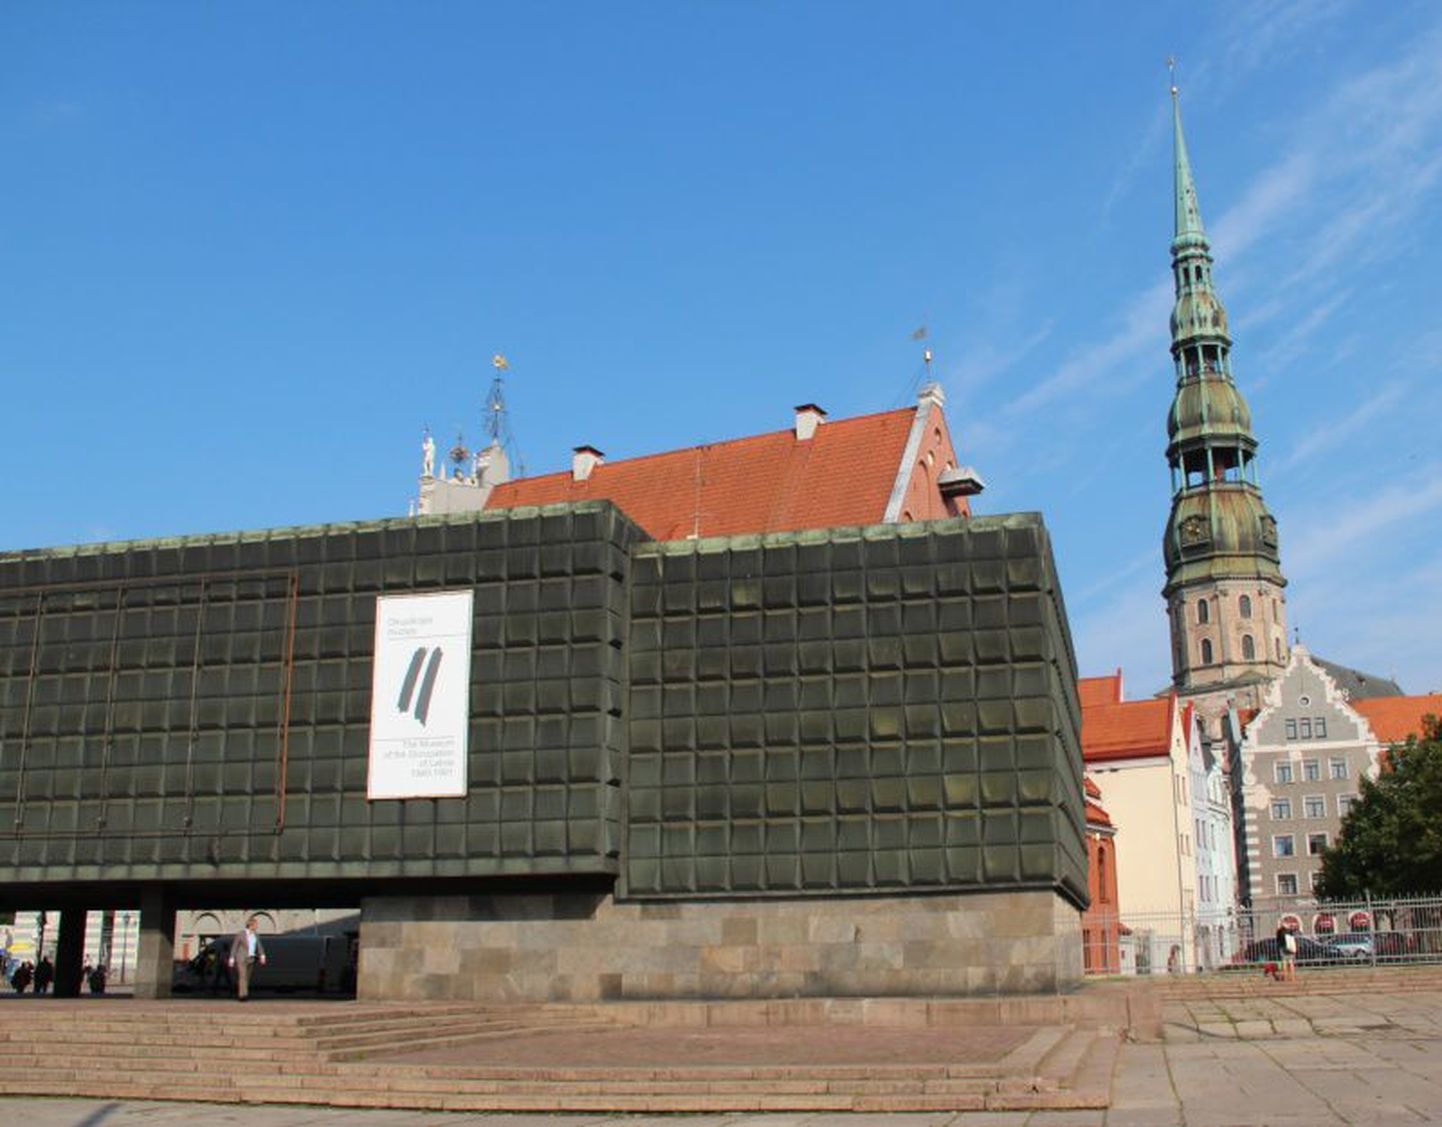 Läti okupatsioonide muuseum asub mugavalt kesklinna turistiteel.